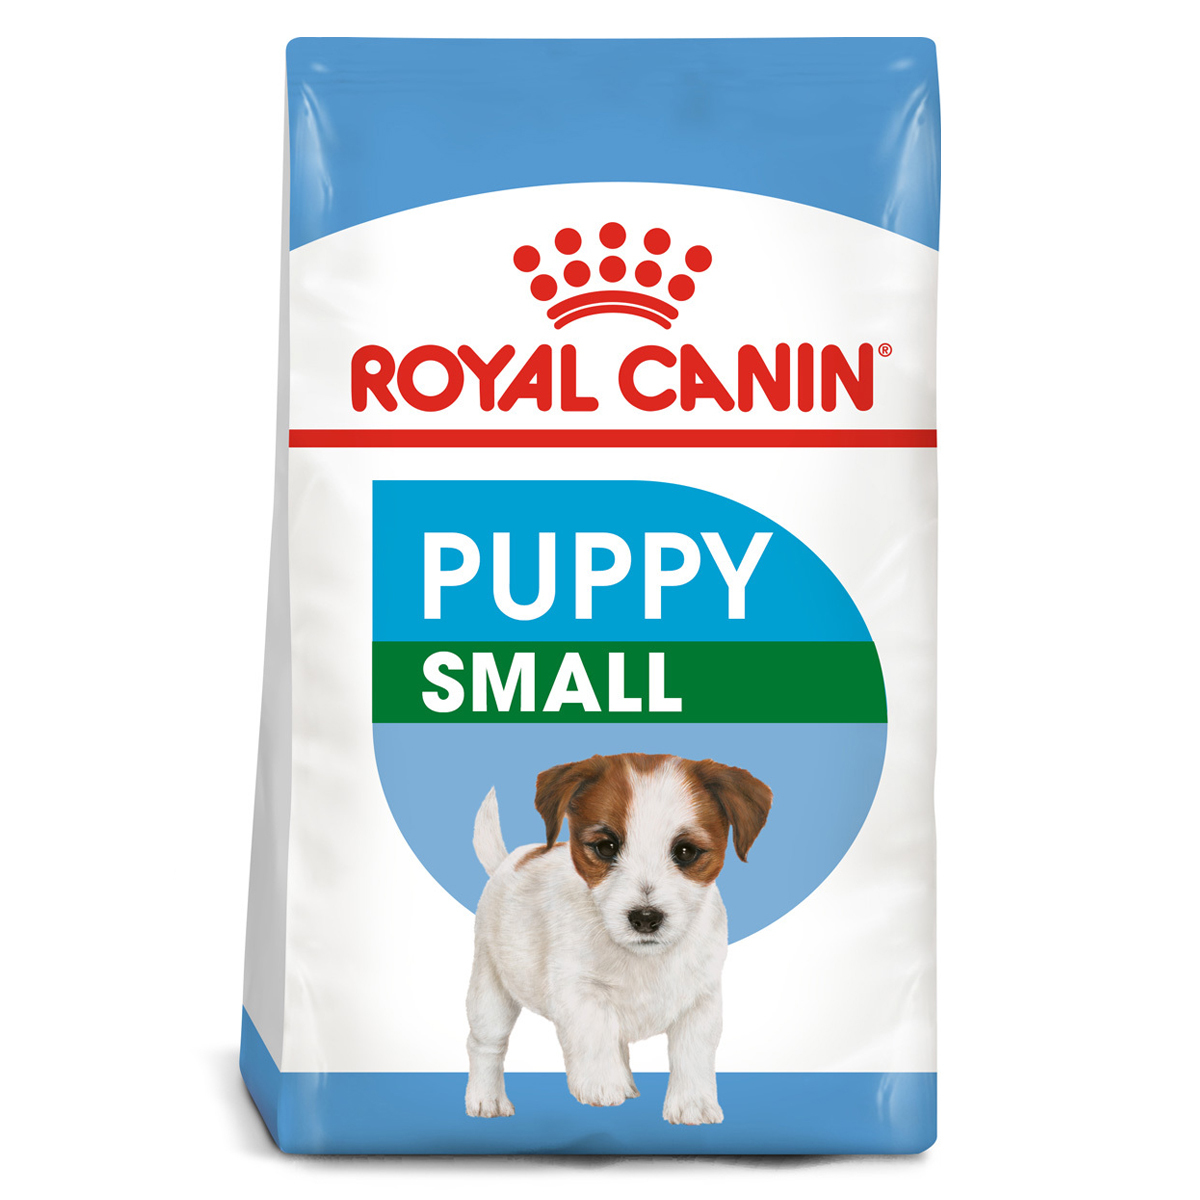 Royal Canin Alimento Seco para Cachorro Raza Pequeña de 2 a 10 Meses, 6.36 kg